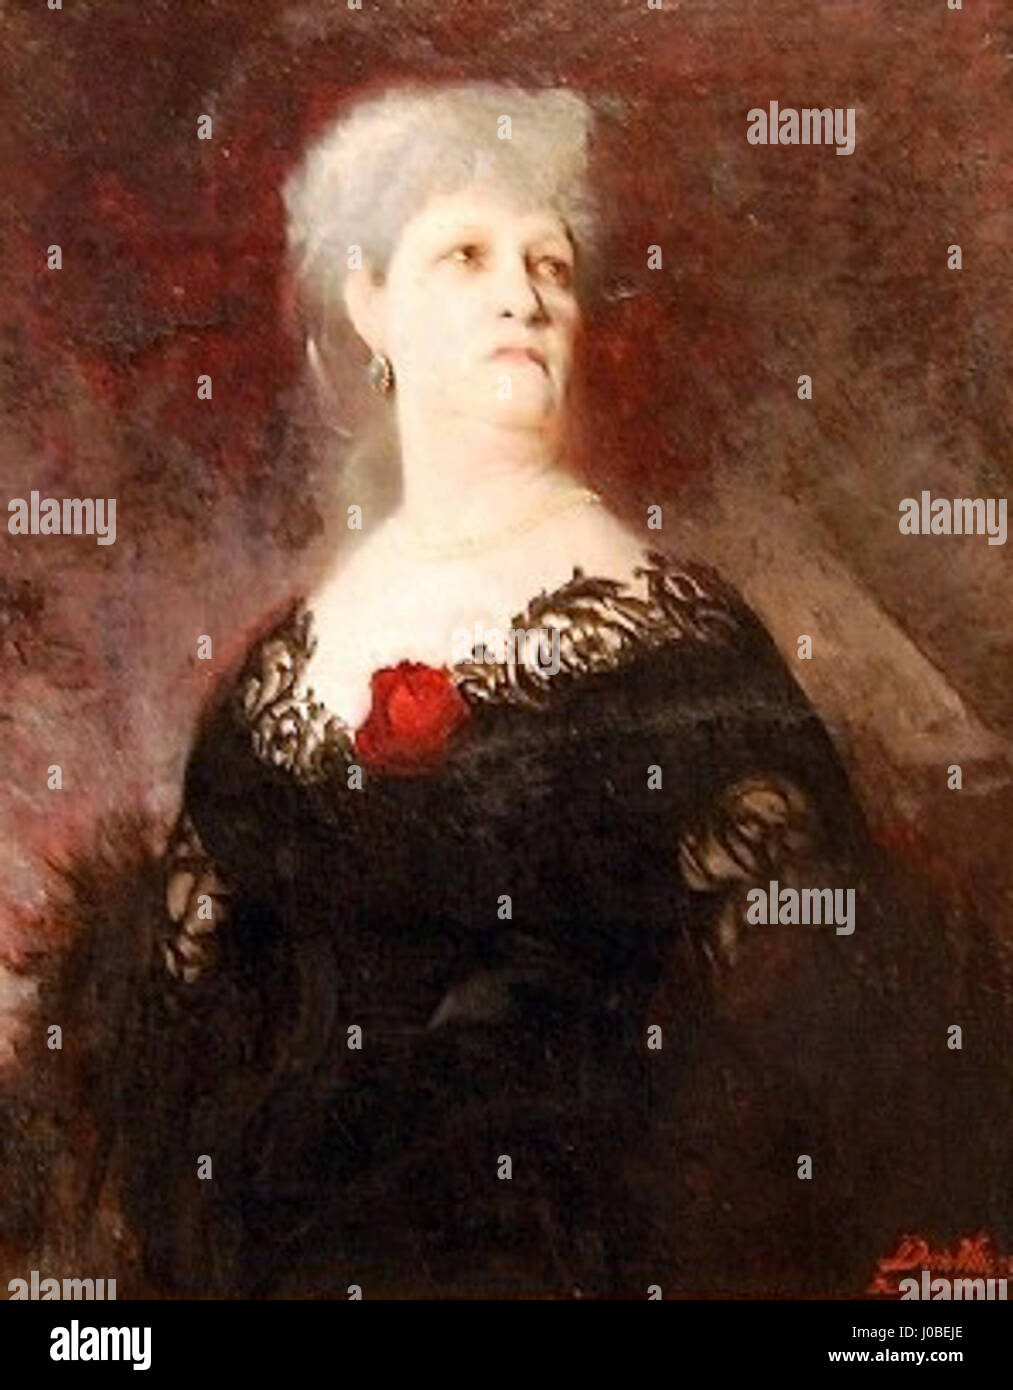 Décio Villares - Retrato de senhora, 1885 Stock Photo